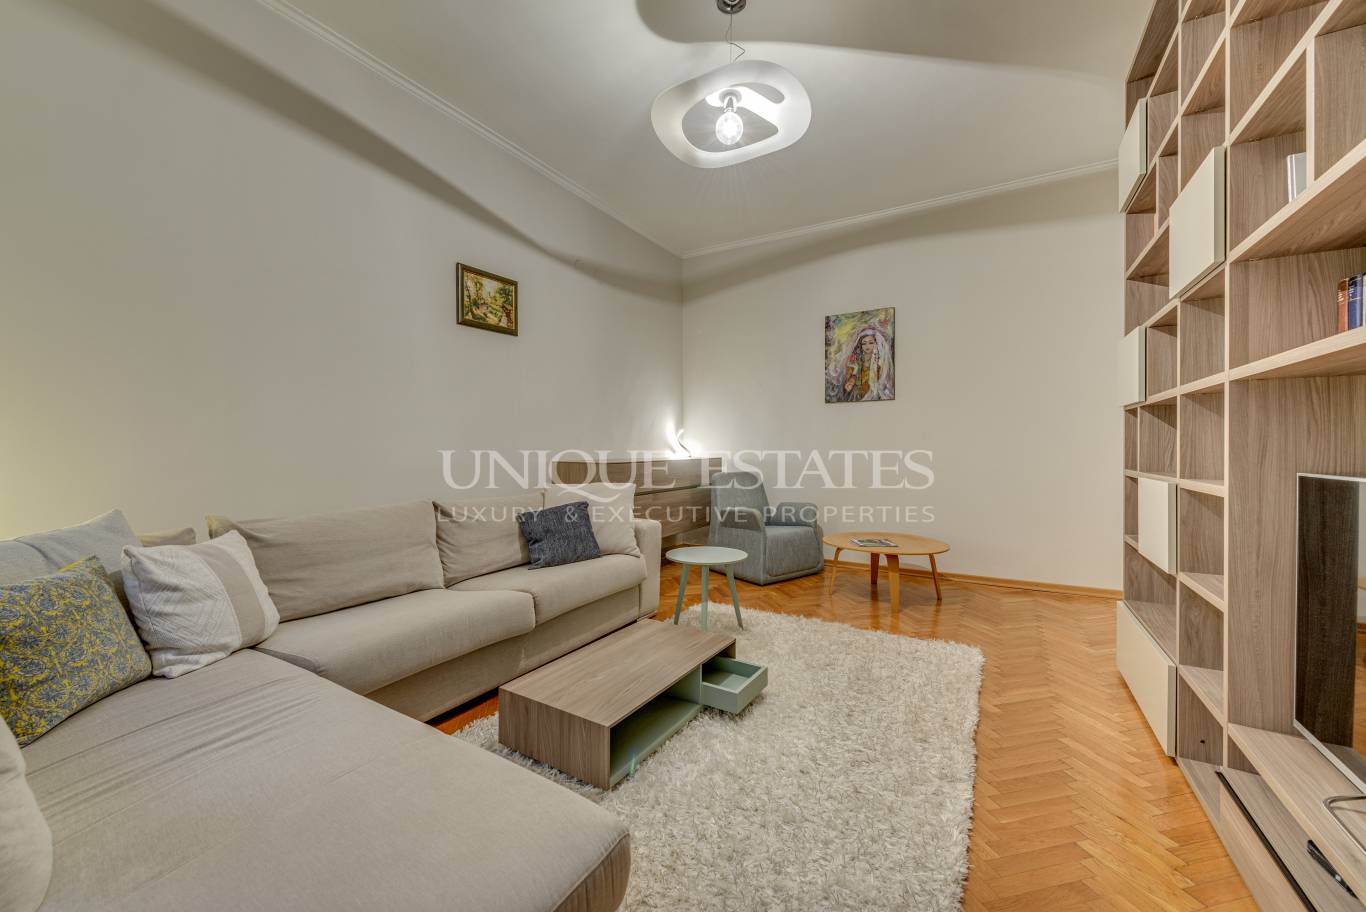 Апартамент под наем в София, Център - код на имота: N20204 - image 2